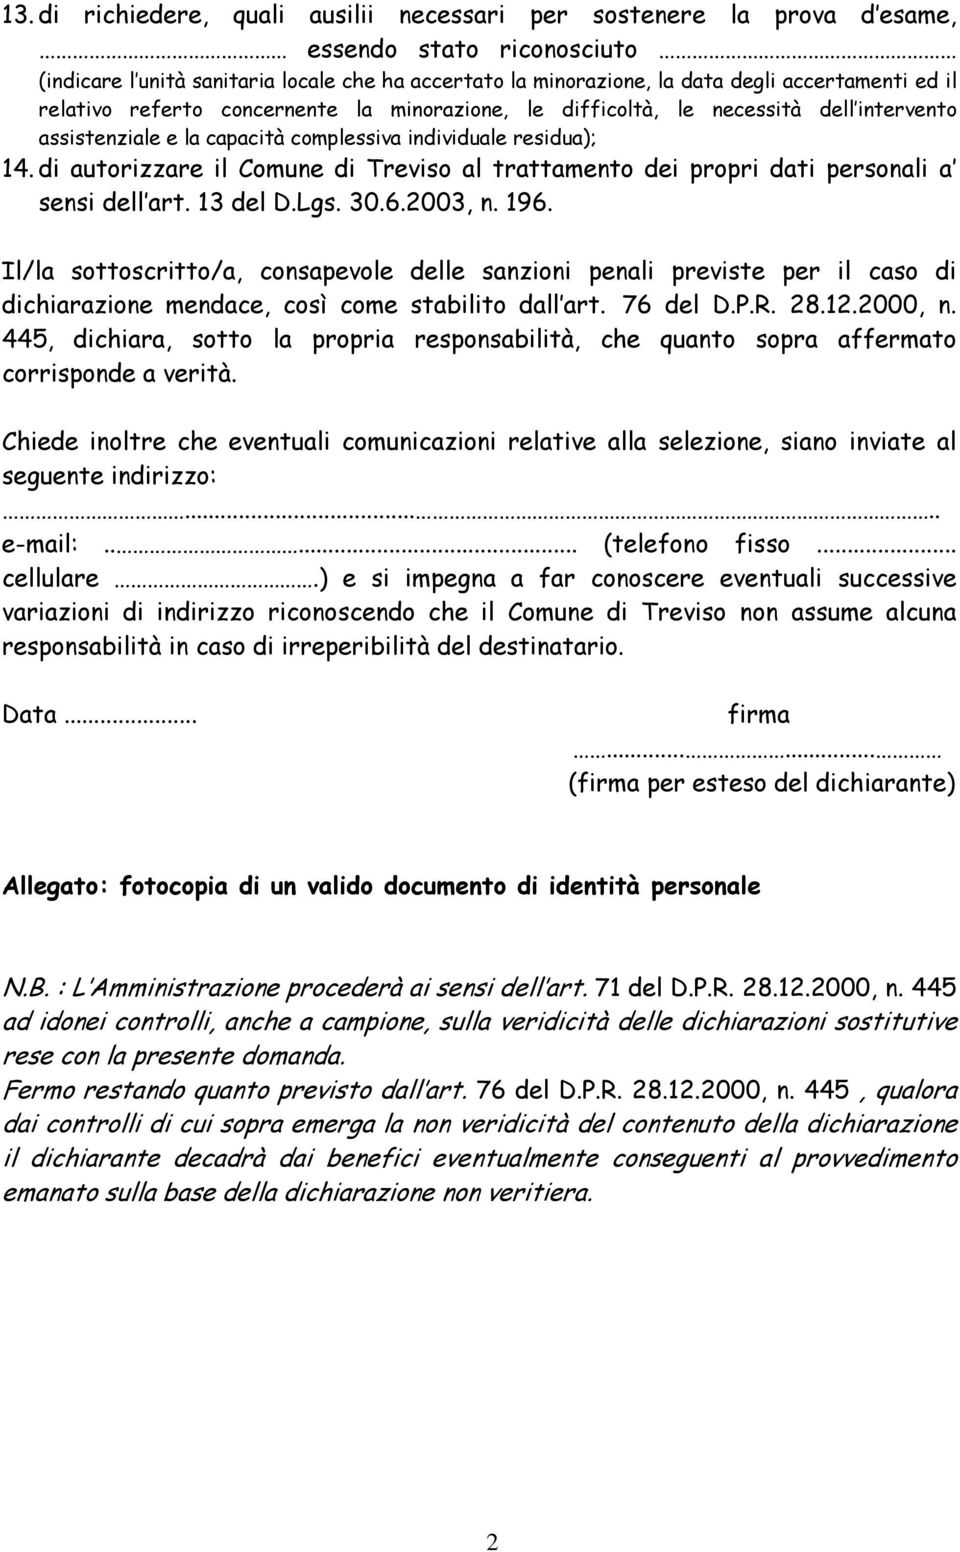 di autorizzare il Comune di Treviso al trattamento dei propri dati personali a sensi dell art. 13 del D.Lgs. 30.6.2003, n. 196.